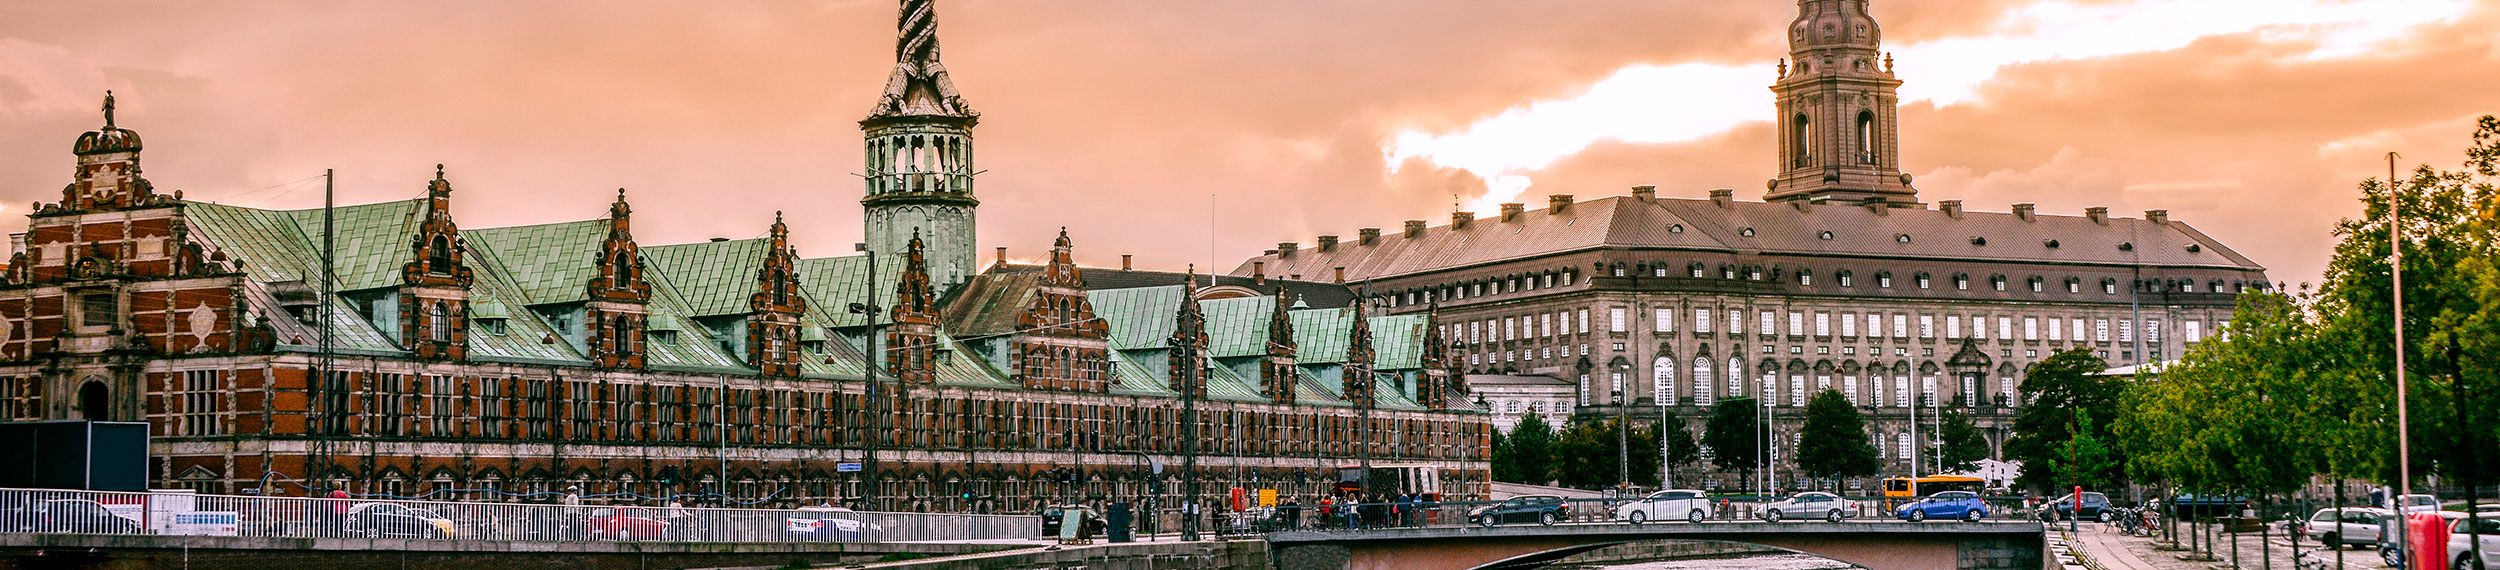 Sunset view of the Port of Copenhagen near the Stock Exchange Building and Christiansborg Castle in Copenhagen, Denmark.